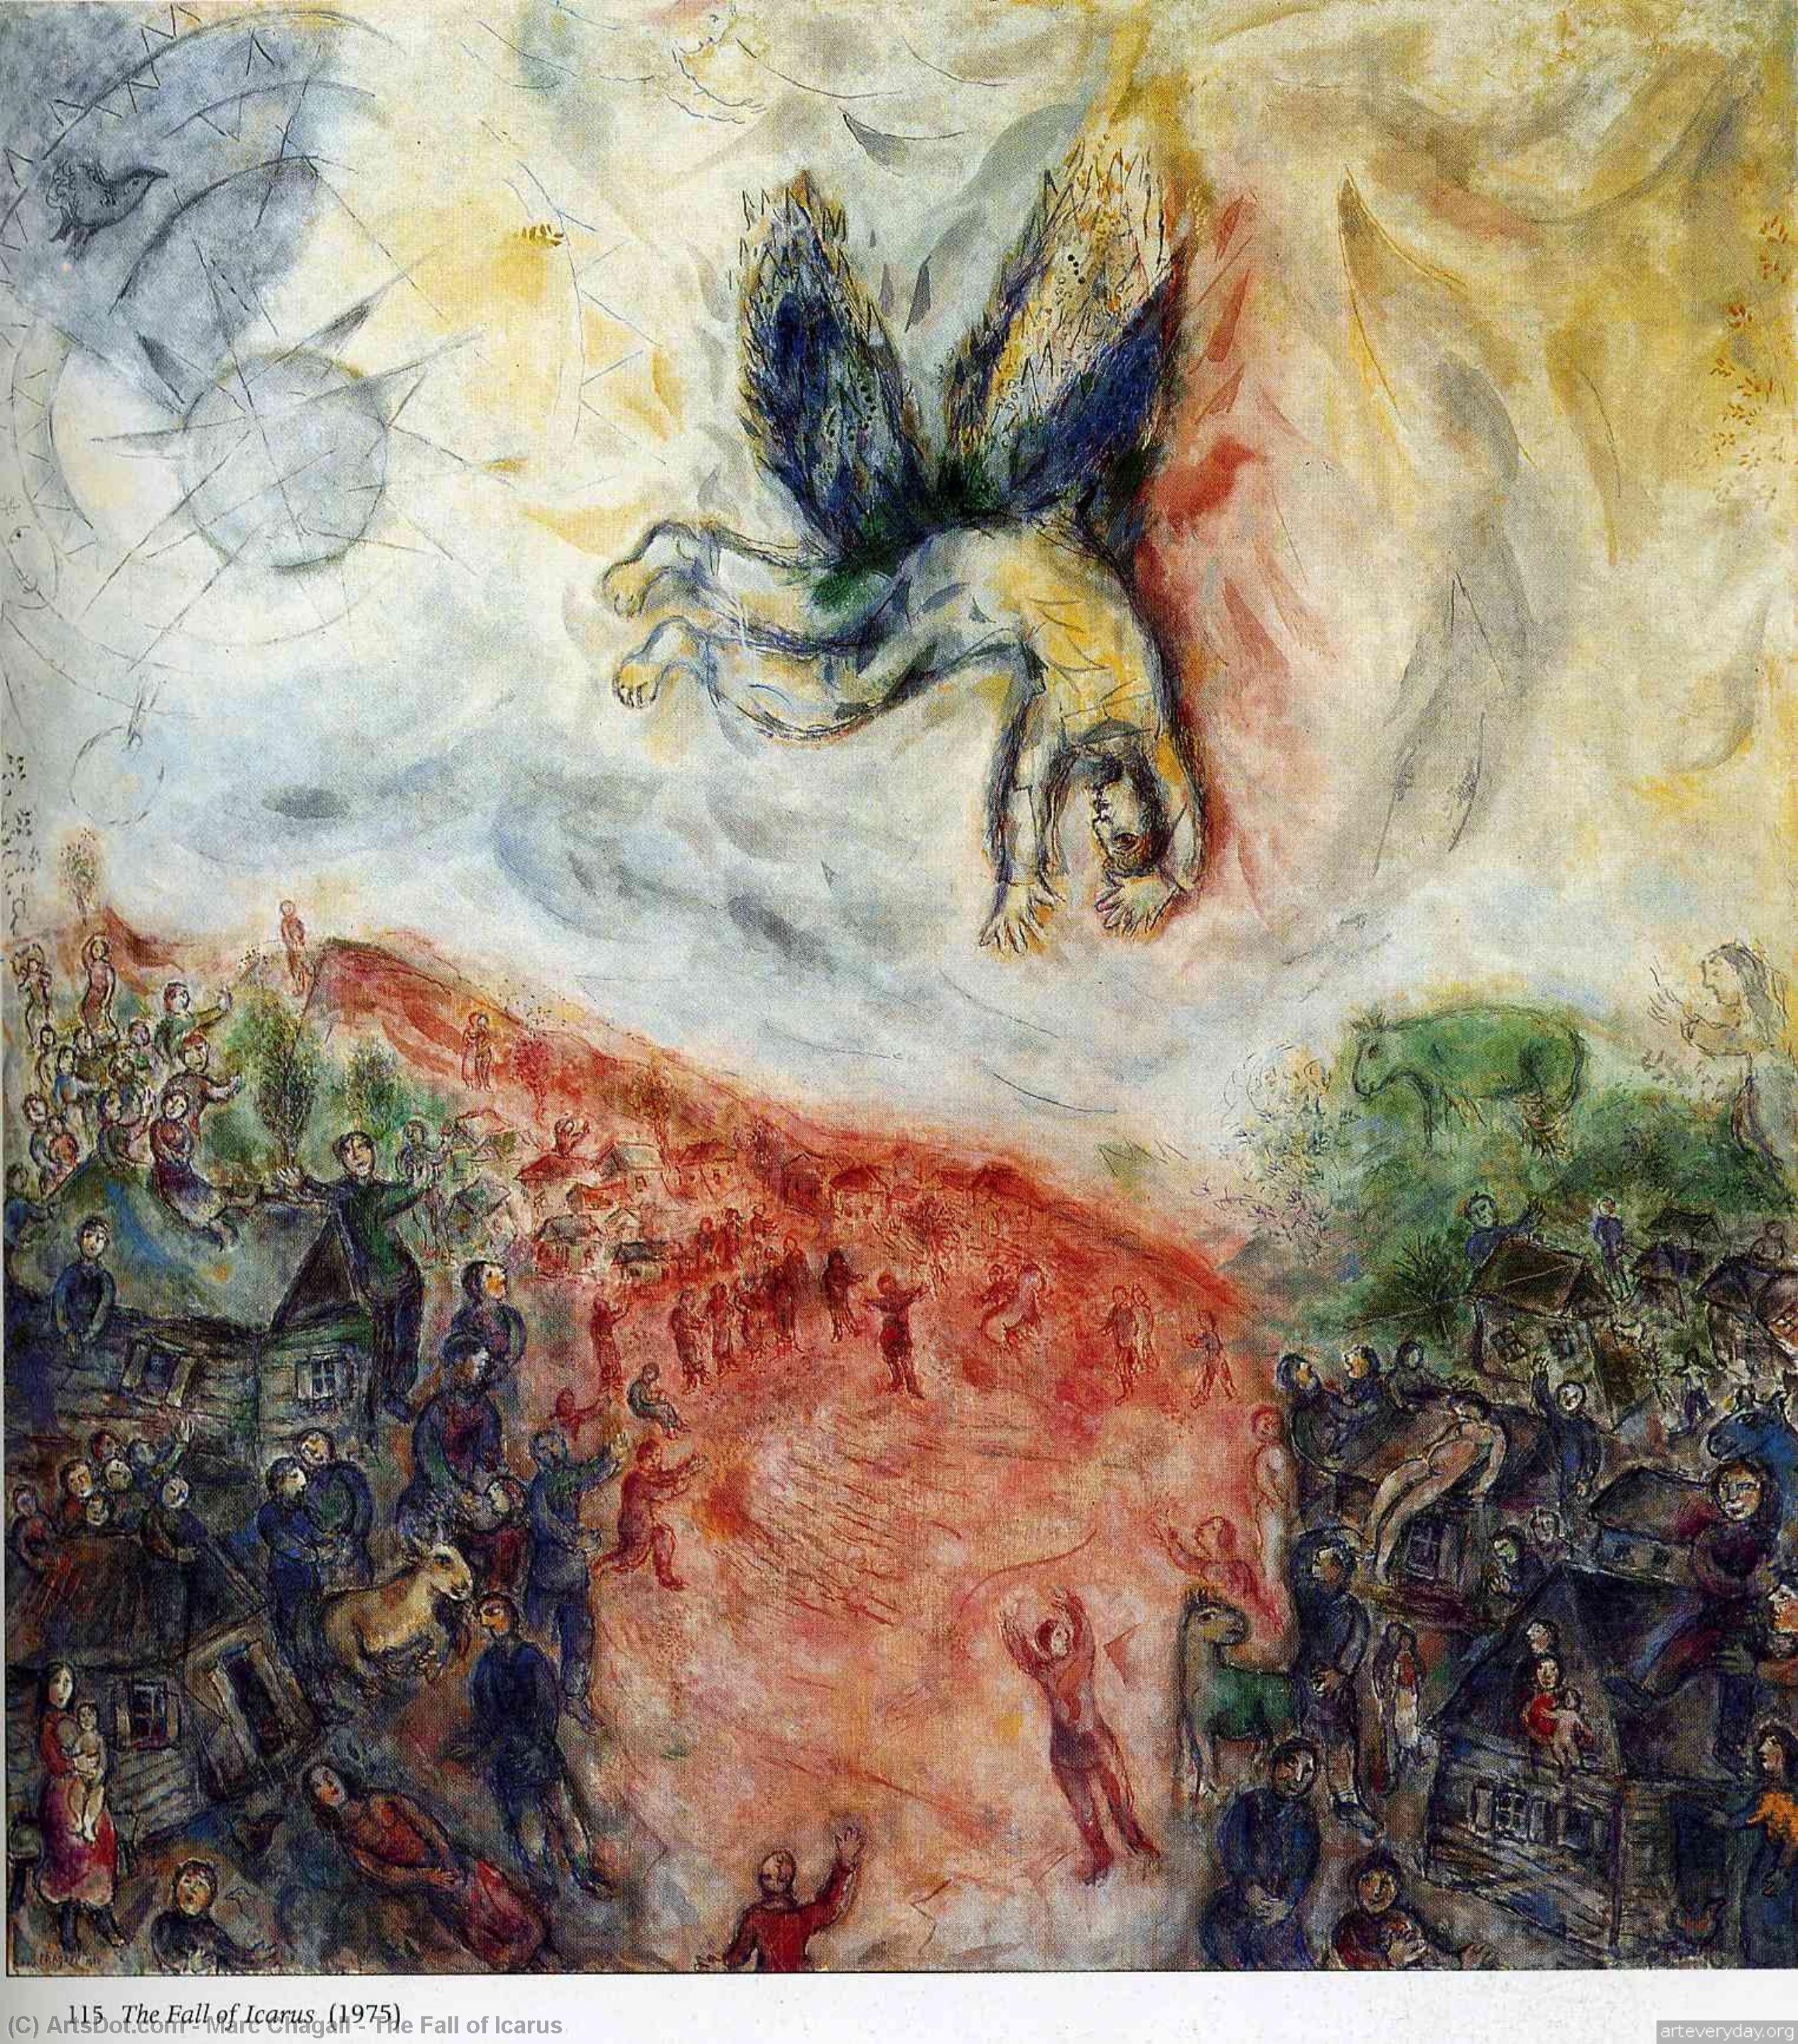 Comprar Reproducciones De Arte Del Museo La caída del Ícaro, 1975 de Marc Chagall (Inspirado por) (1887-1985, Belarus) | ArtsDot.com